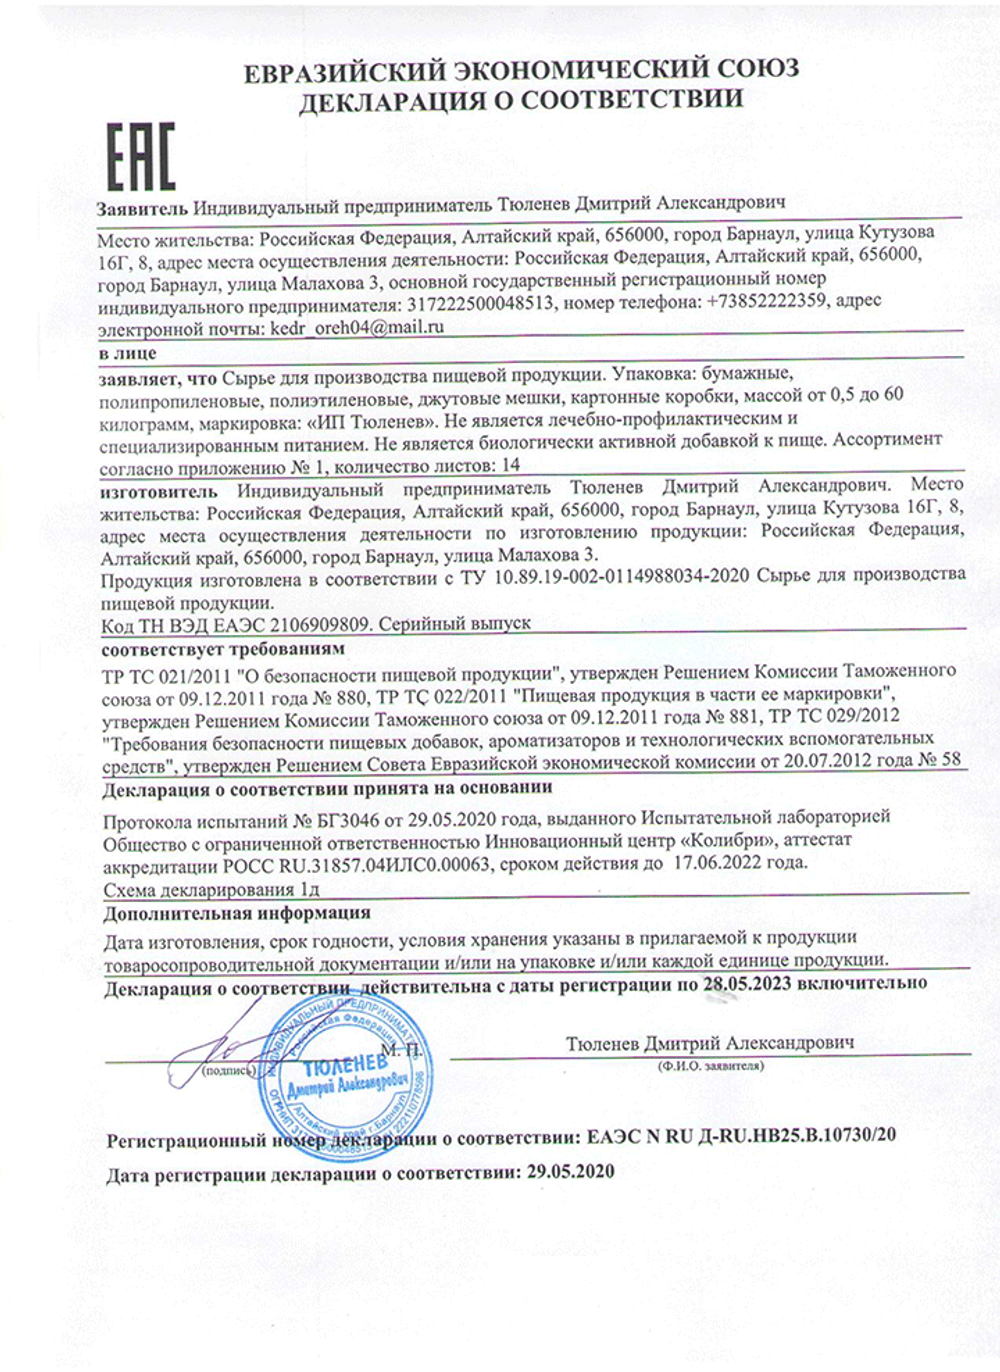 Изображение сертификата соответствия листа брусники-adonnis.ru